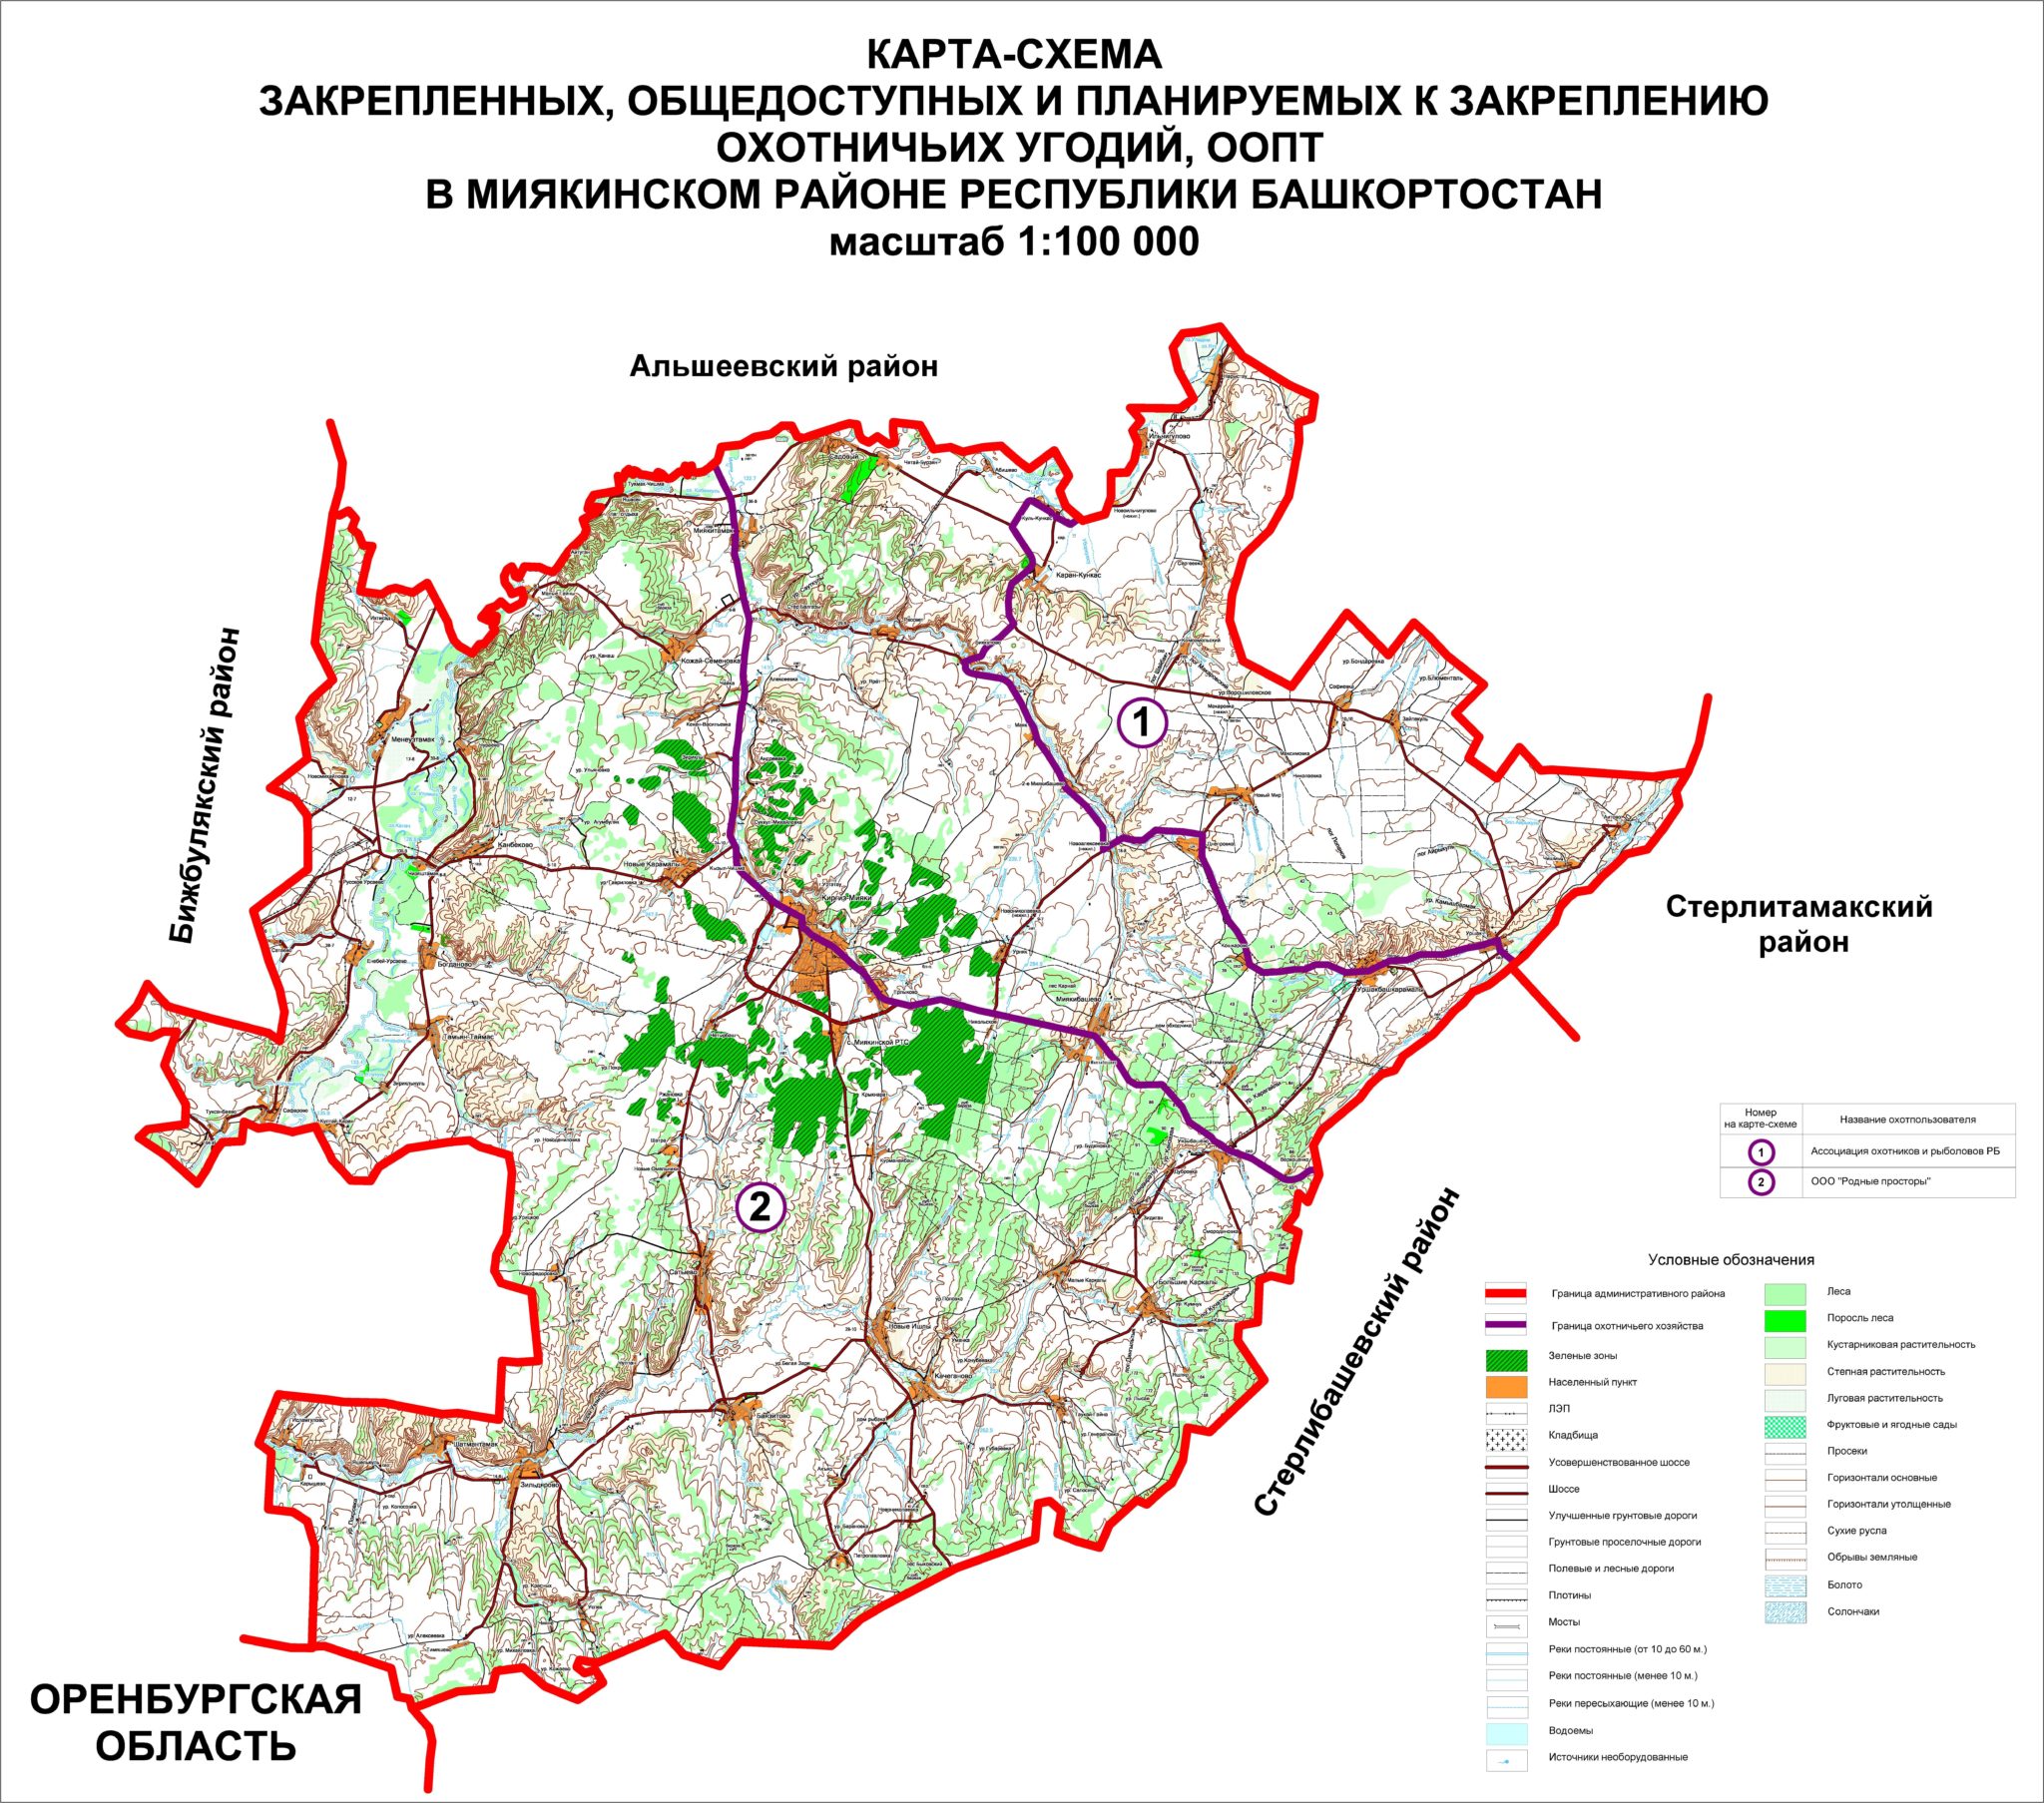 Карта Миякинского района Республики Башкортостан с деревнями